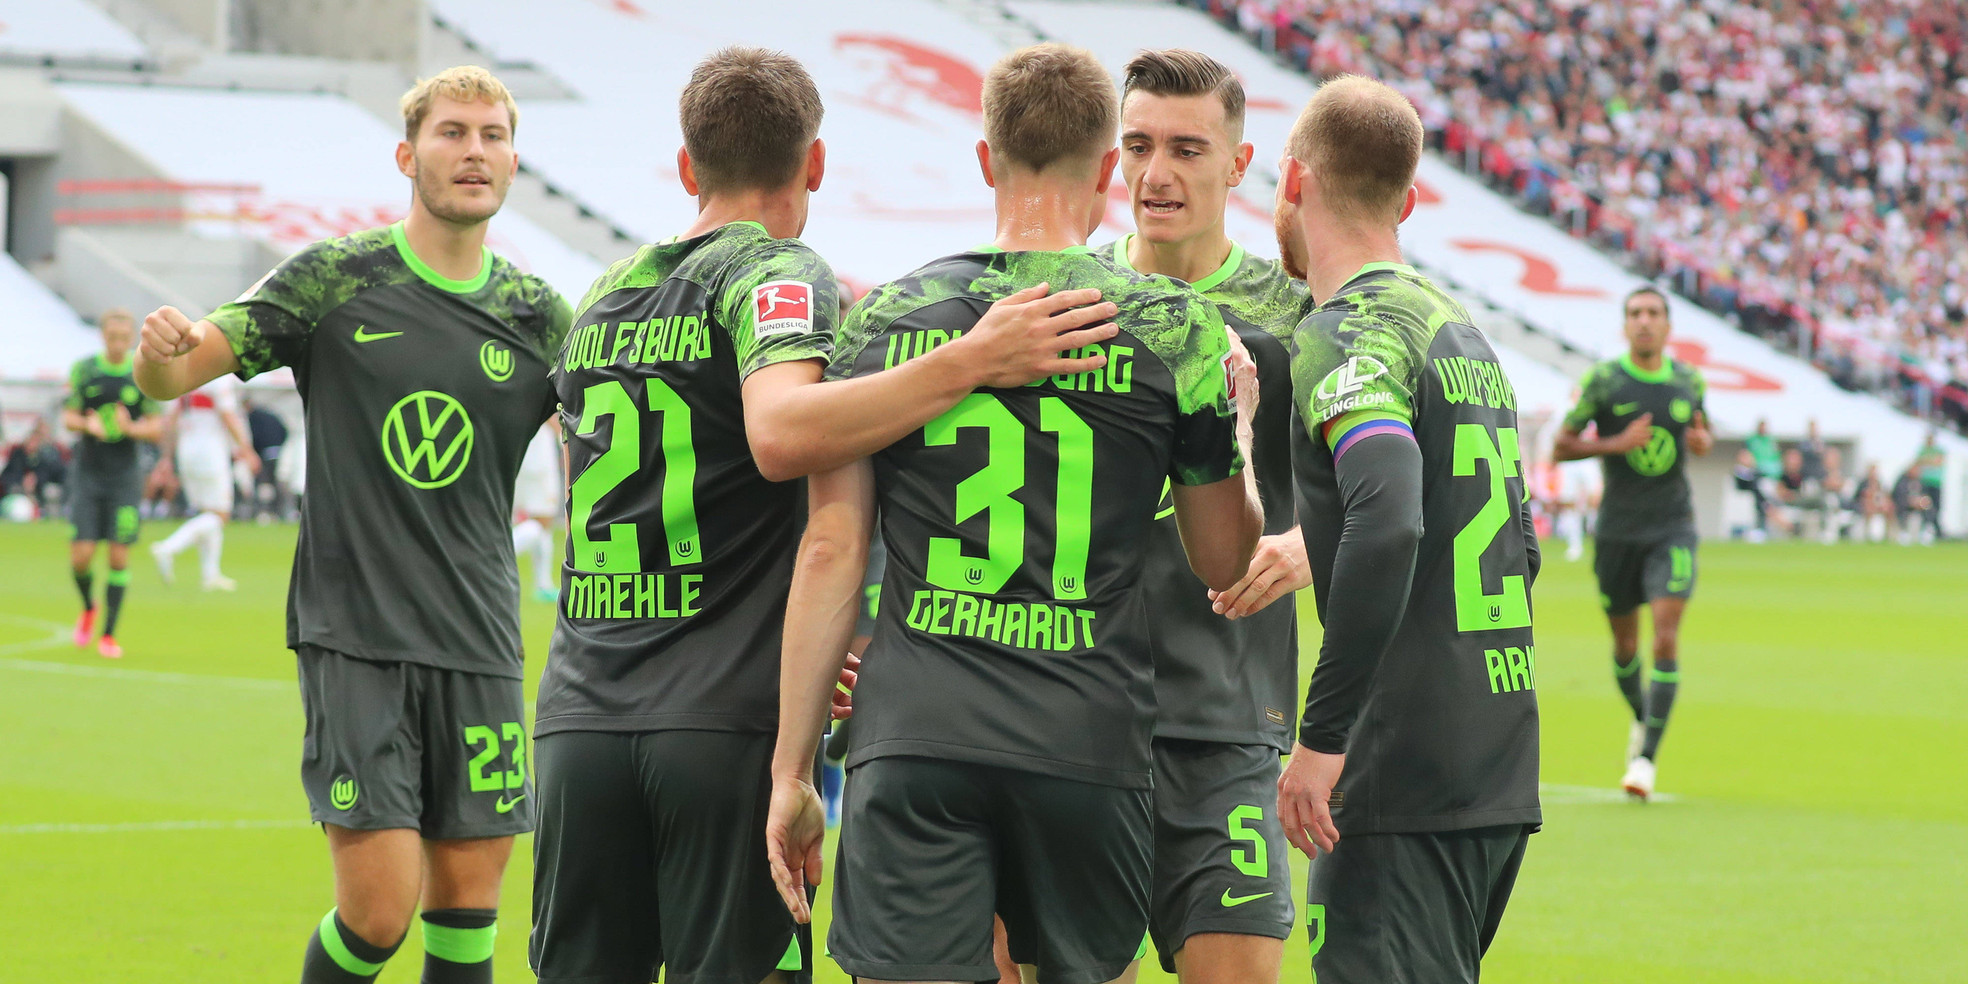 VfL Wolfsburg: Wer spielt, wenn alle fit sind?